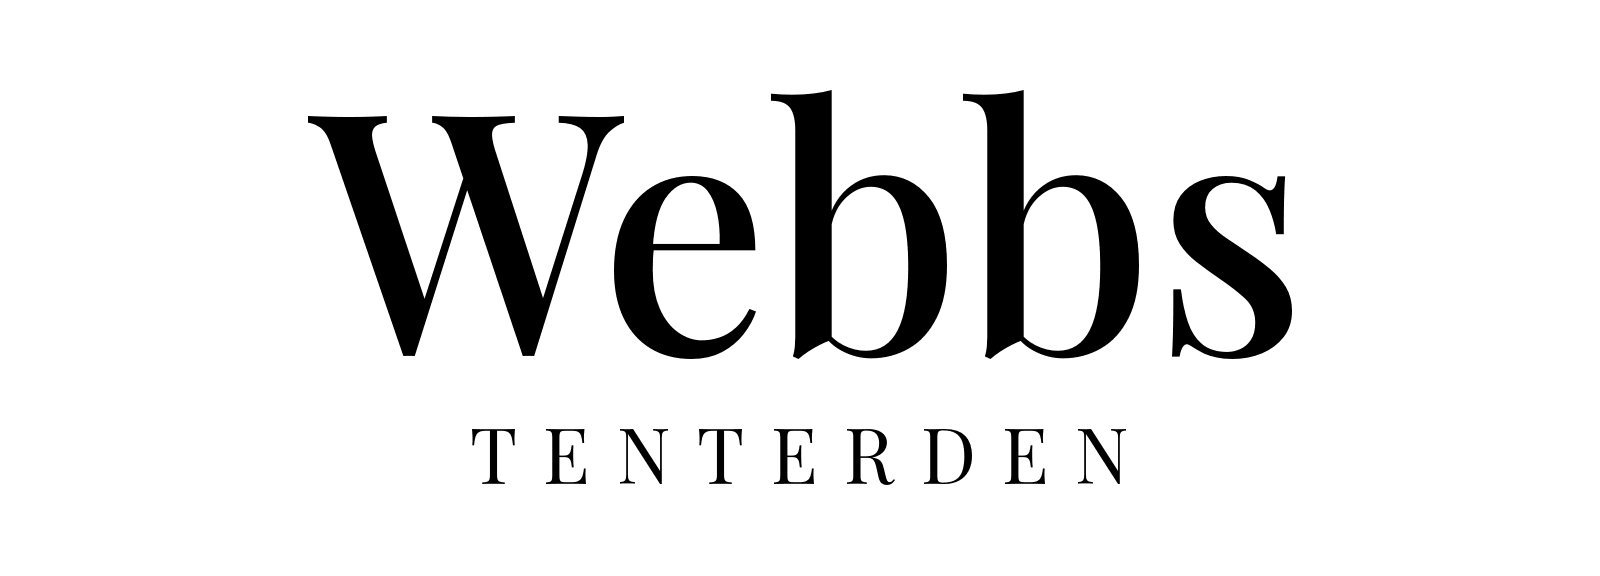 logo of Webbs of Tenterden shop